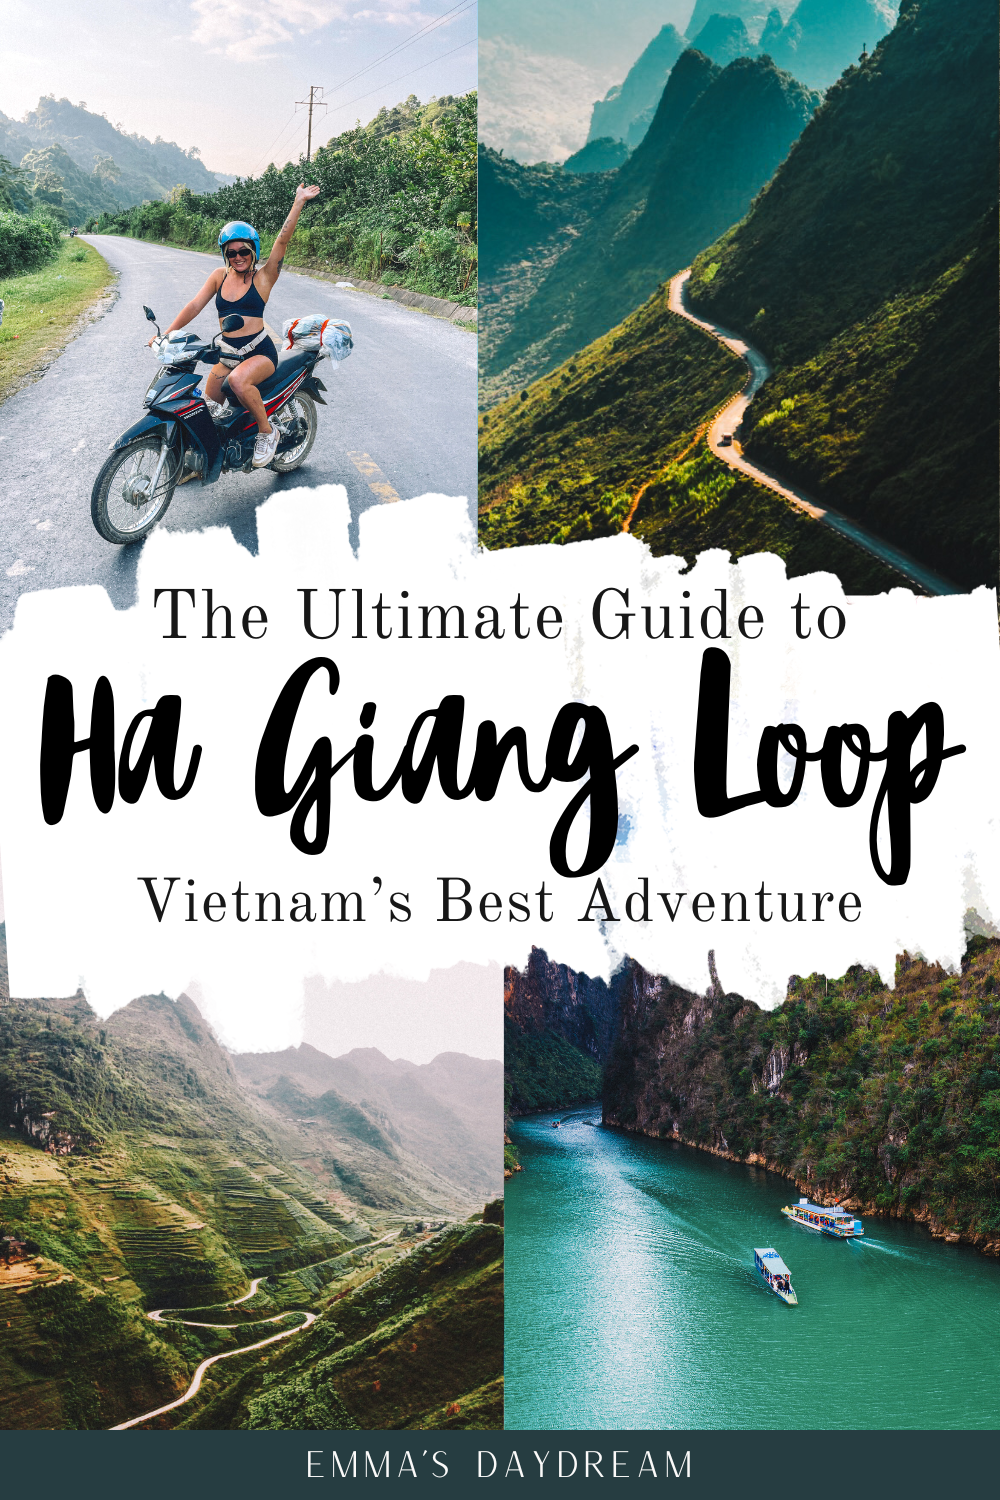 Ha Giang Loop